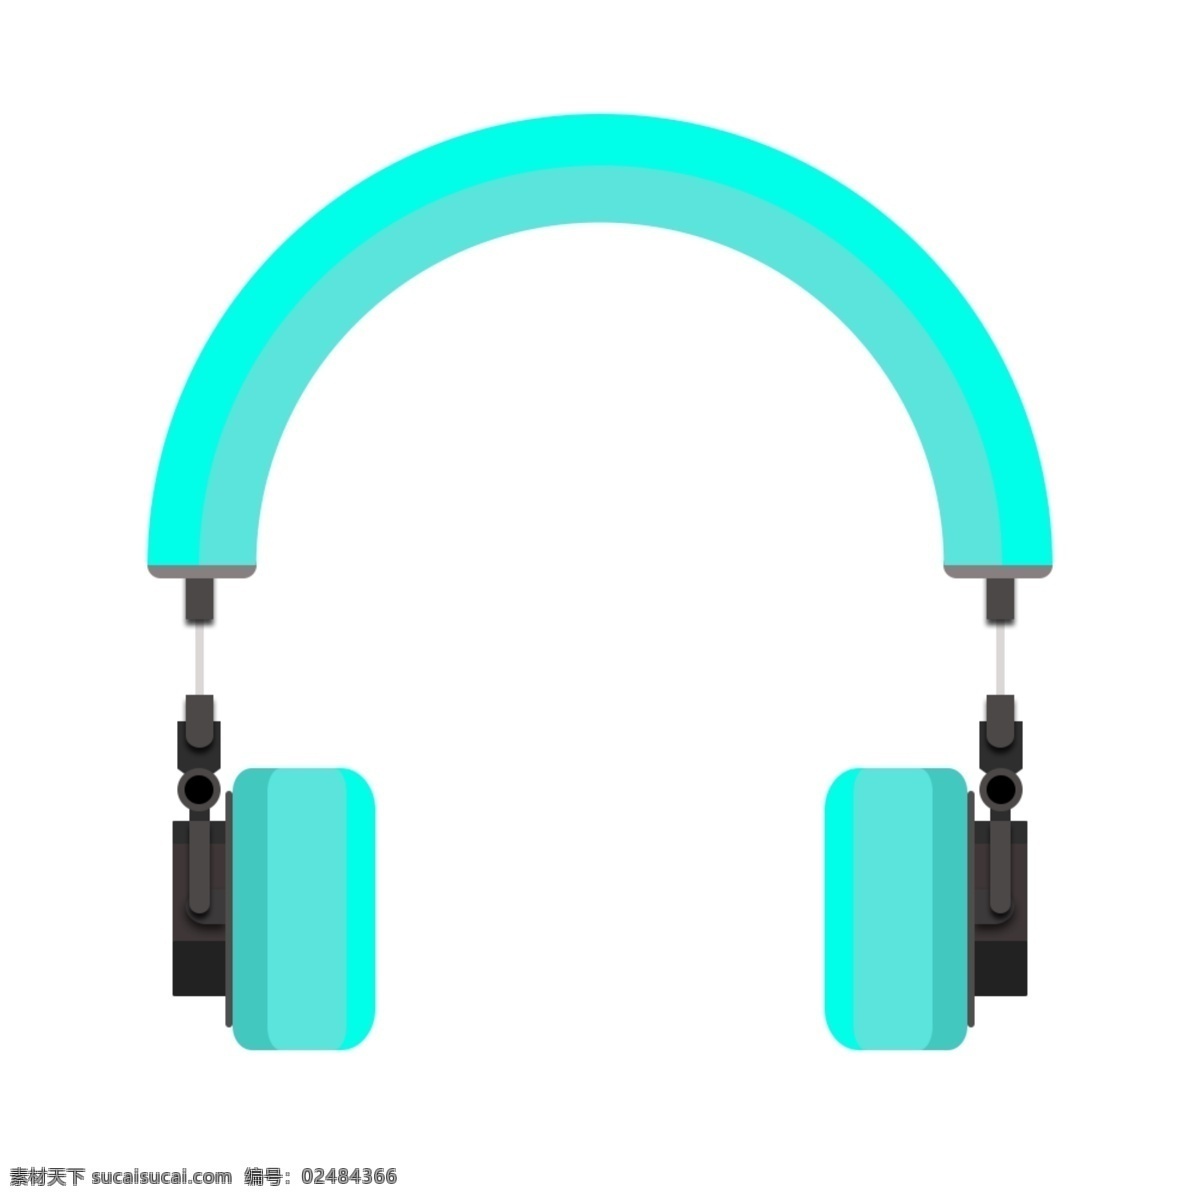 耳机 图标 潮流 颜色 麦克风 潮流耳机 青色耳机 蓝色耳机 最新耳机图标 耳机图标